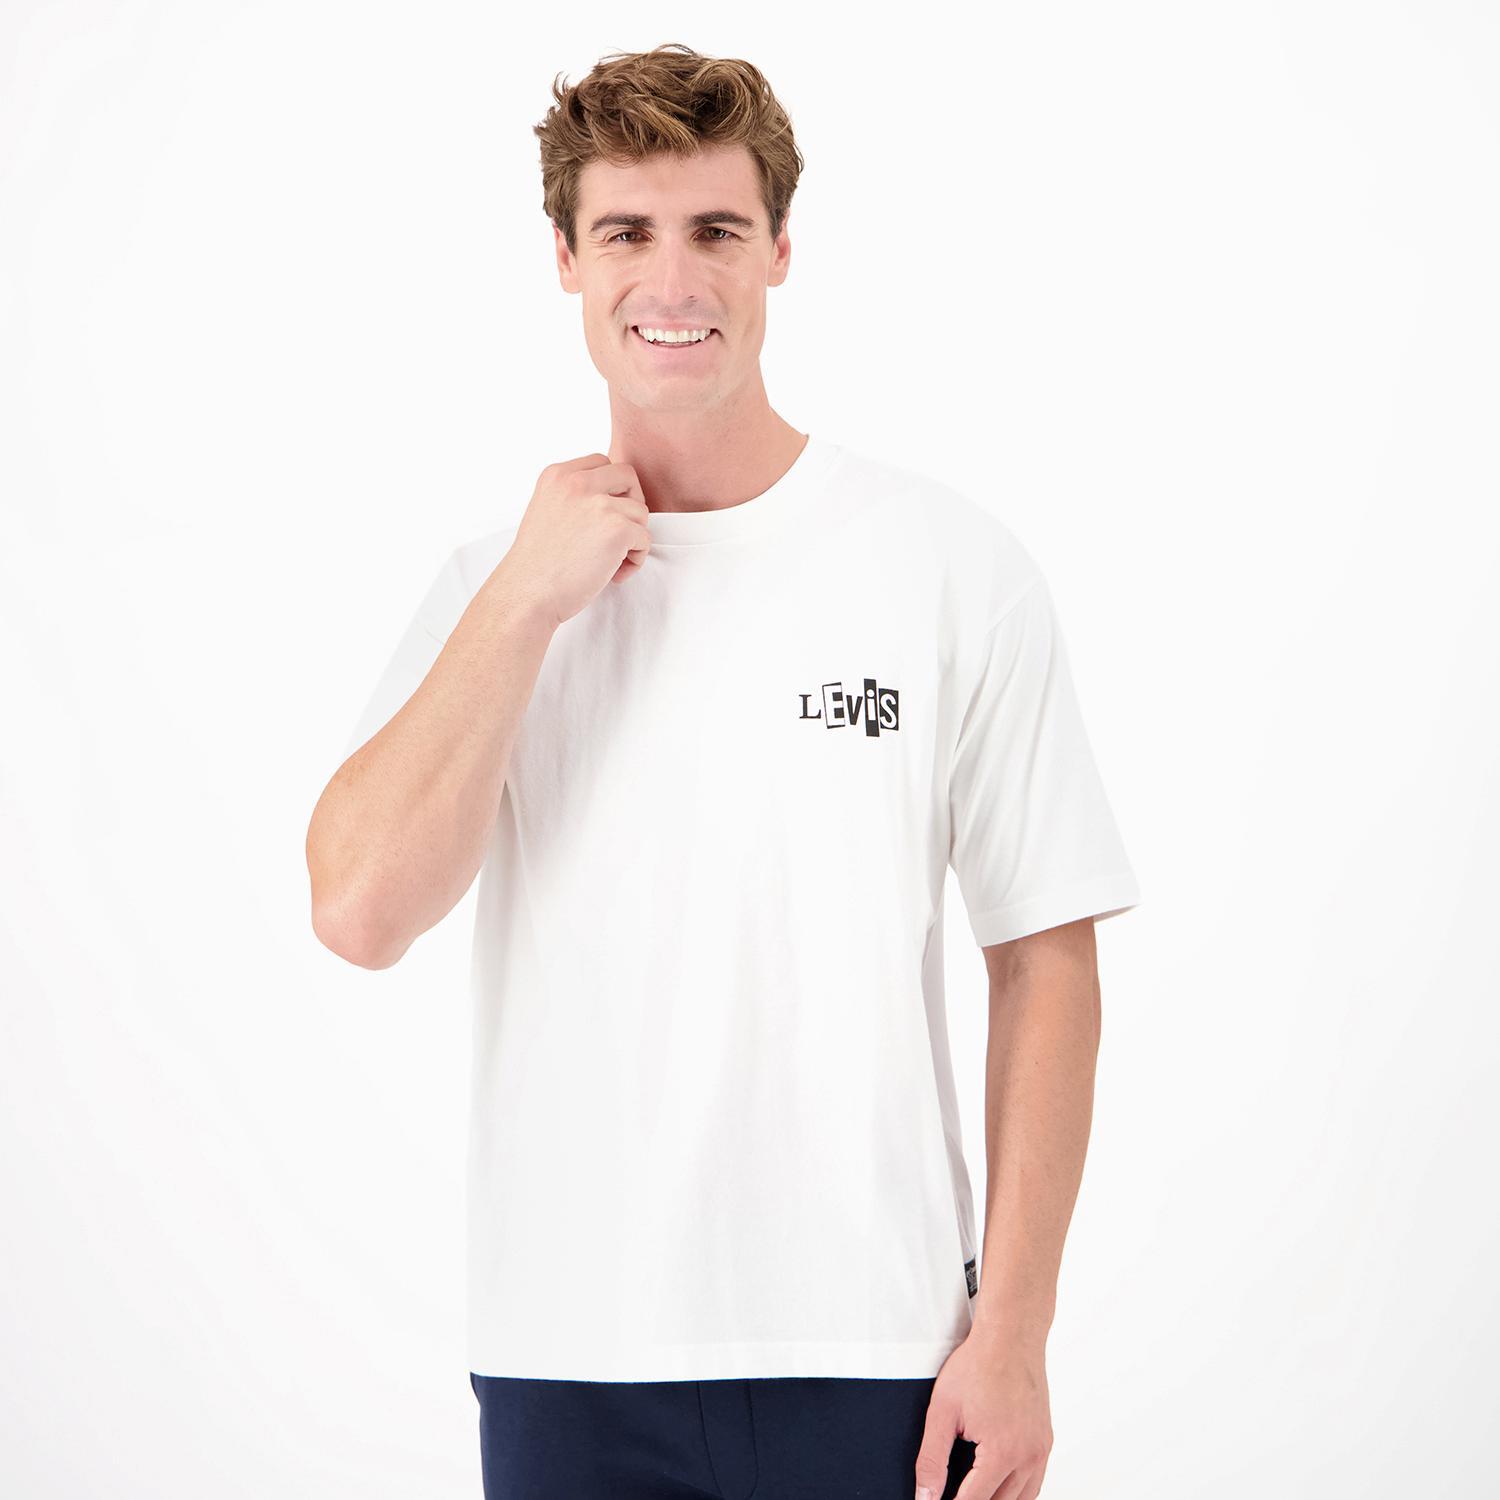 Levi's Skate - Branco - T-shirt Homem tamanho L